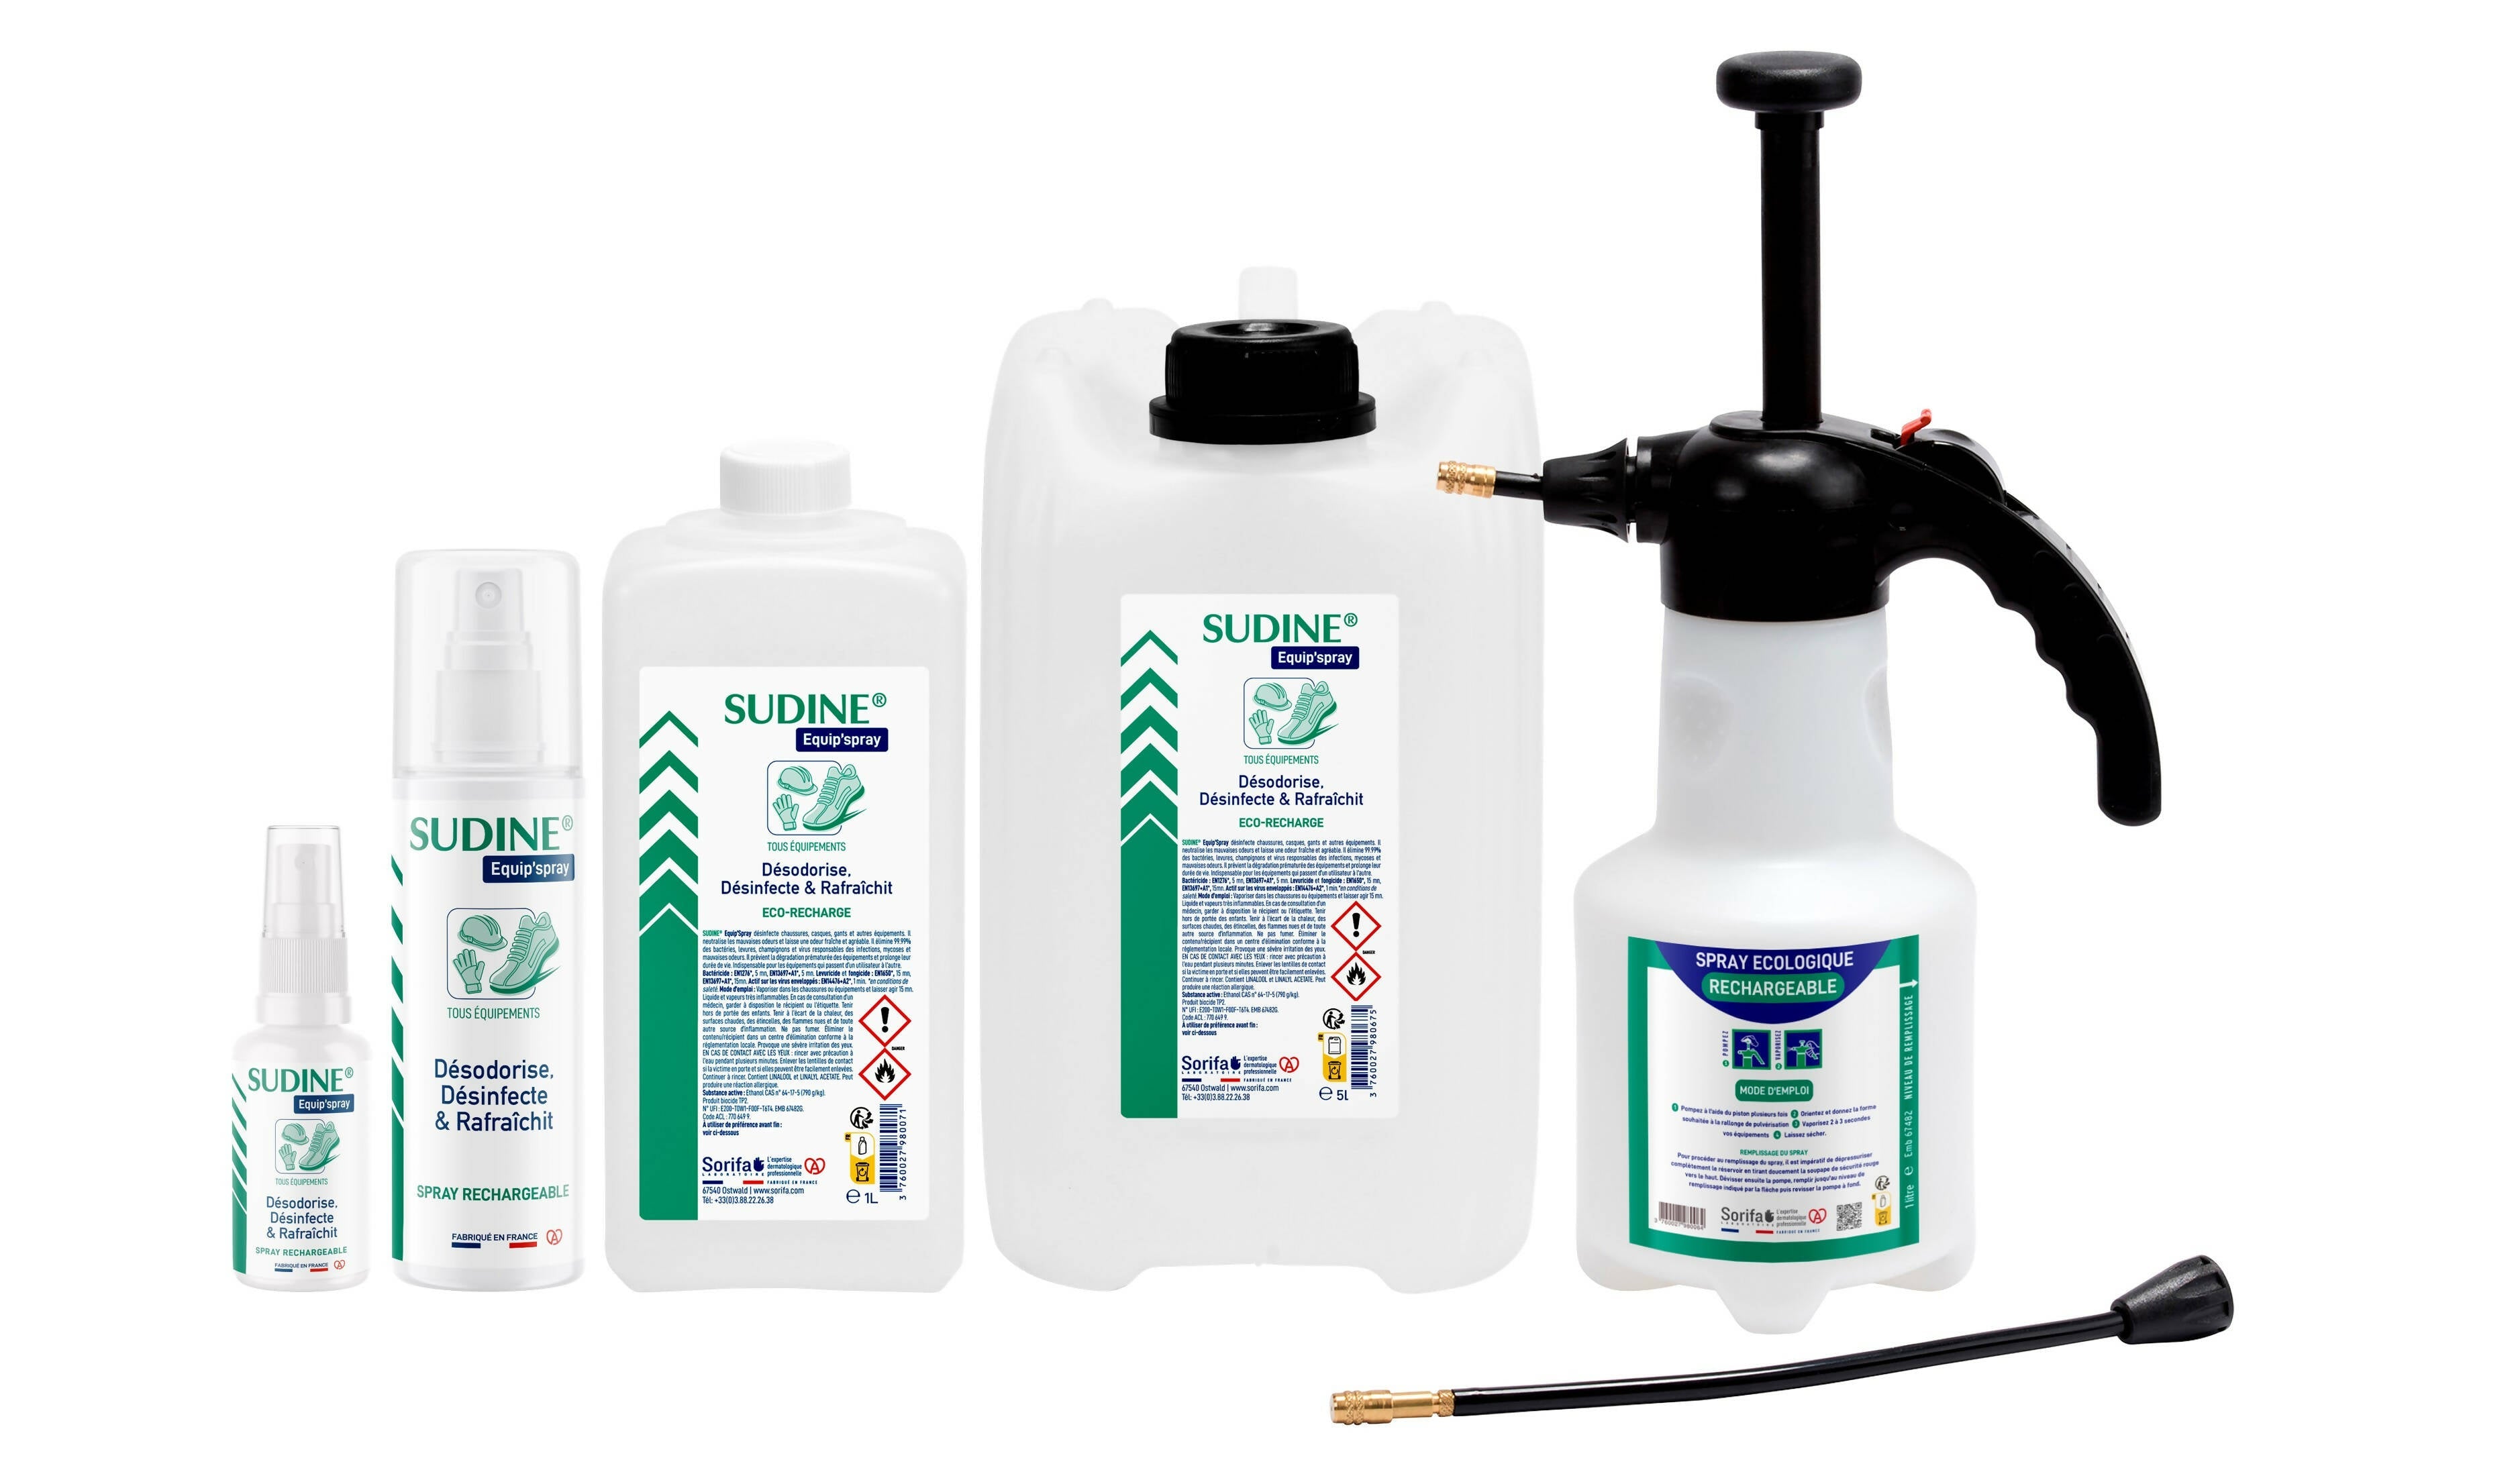 SORIFA - 2er-Set - Sudine Equip'spray - Desodoriert, desinfiziert, erfrischt - Schuhe, Helme, Handschuhe, Ausrüstung - 1L-Nachfüllung für SUDINE Equip'spray 50 und 125 ml oder für das 1L SORIFA Spray